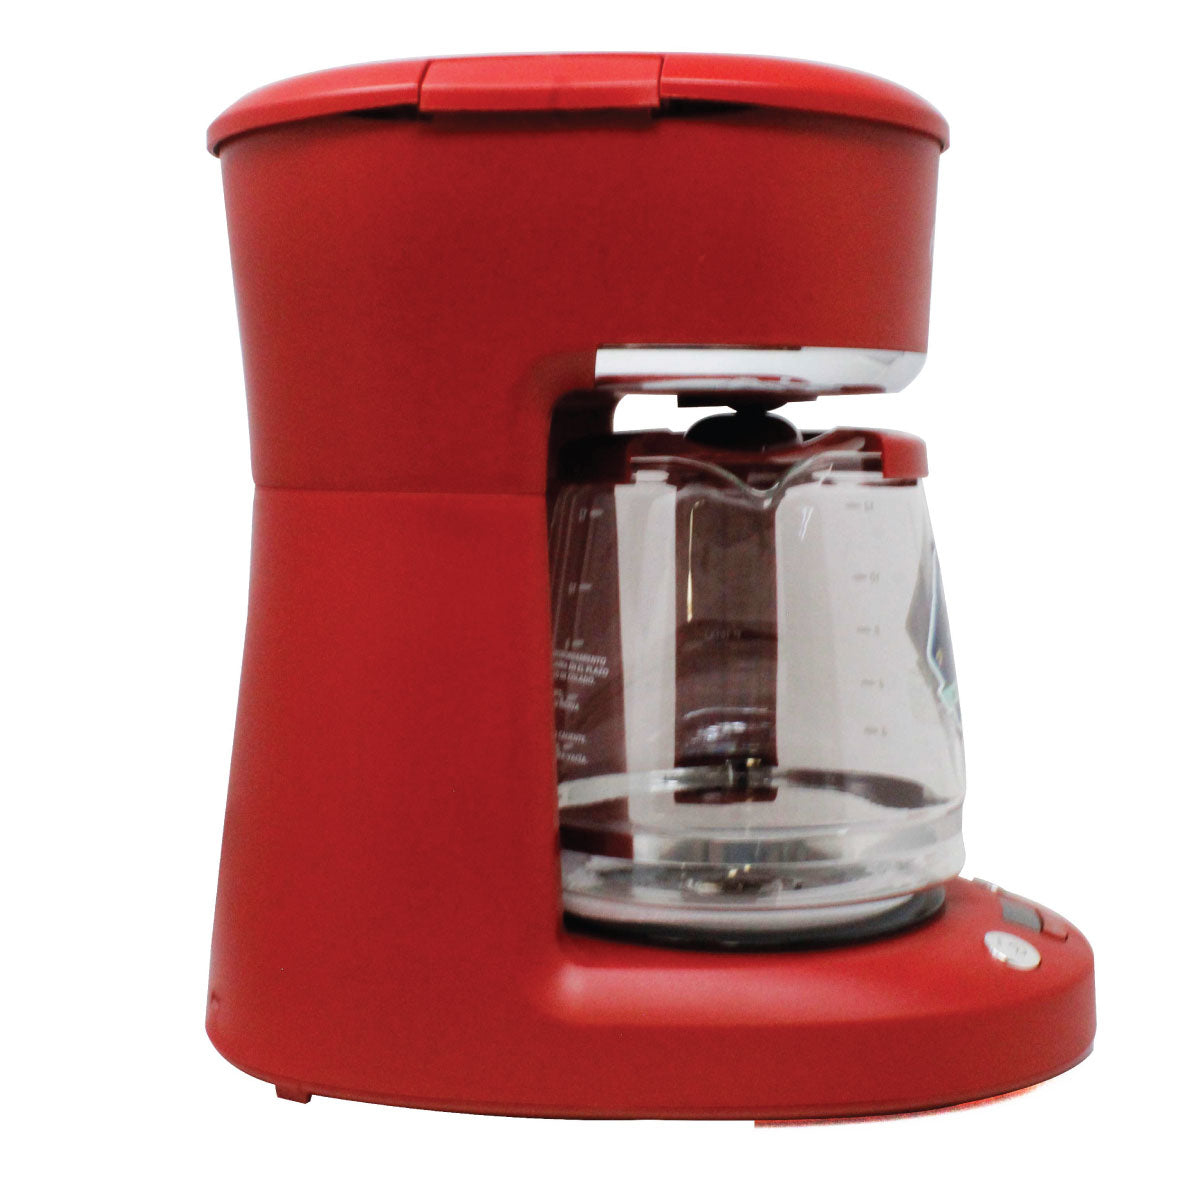 Oster® Cafetera de 12 tazas roja sistema programable con reloj digital BVSTDCP12R013 Paquete 2 piezas